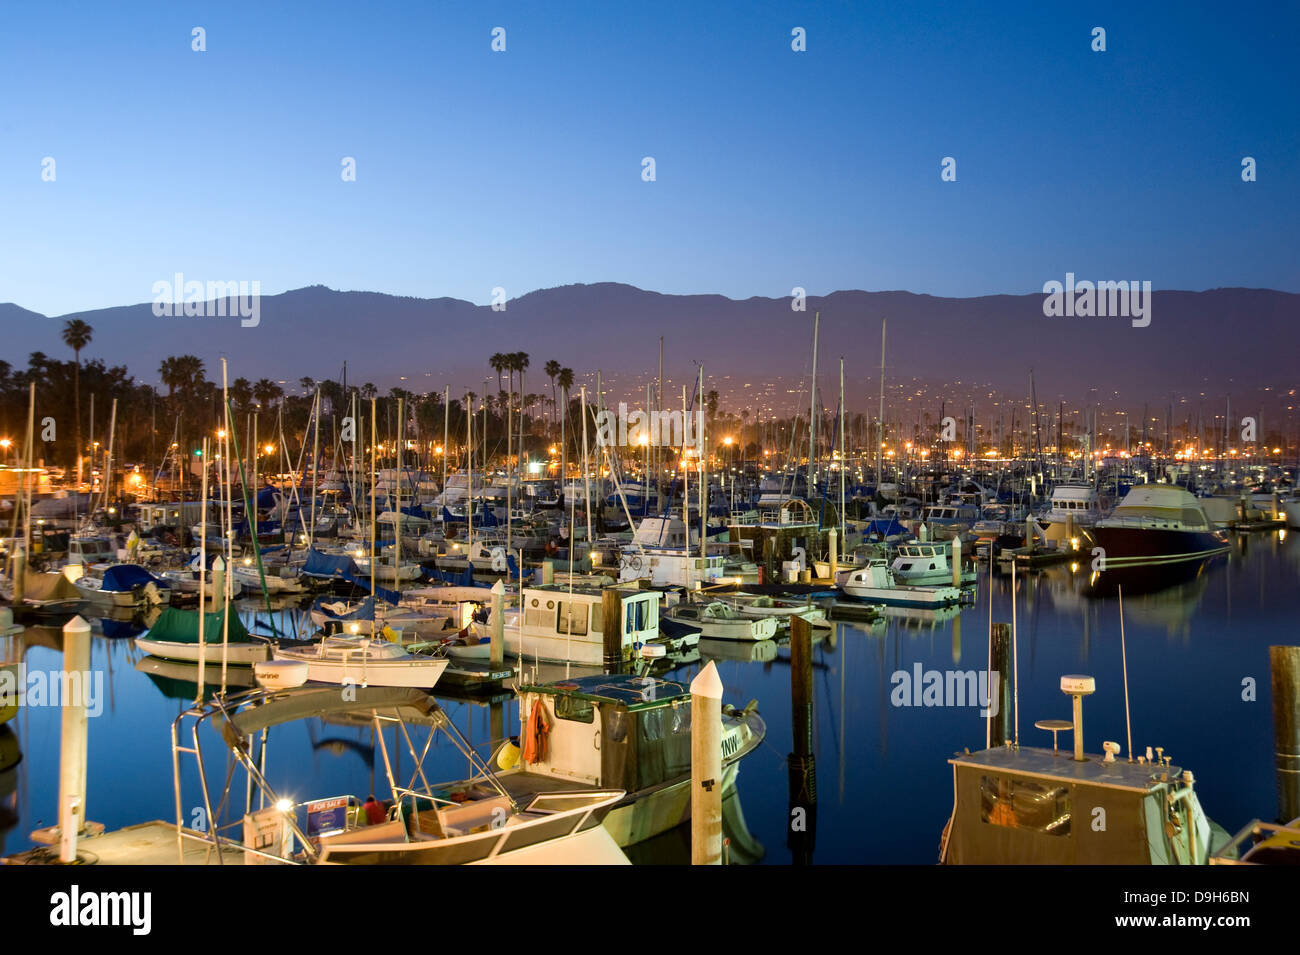 The boat harbor in Santa Barbara Stock Photo